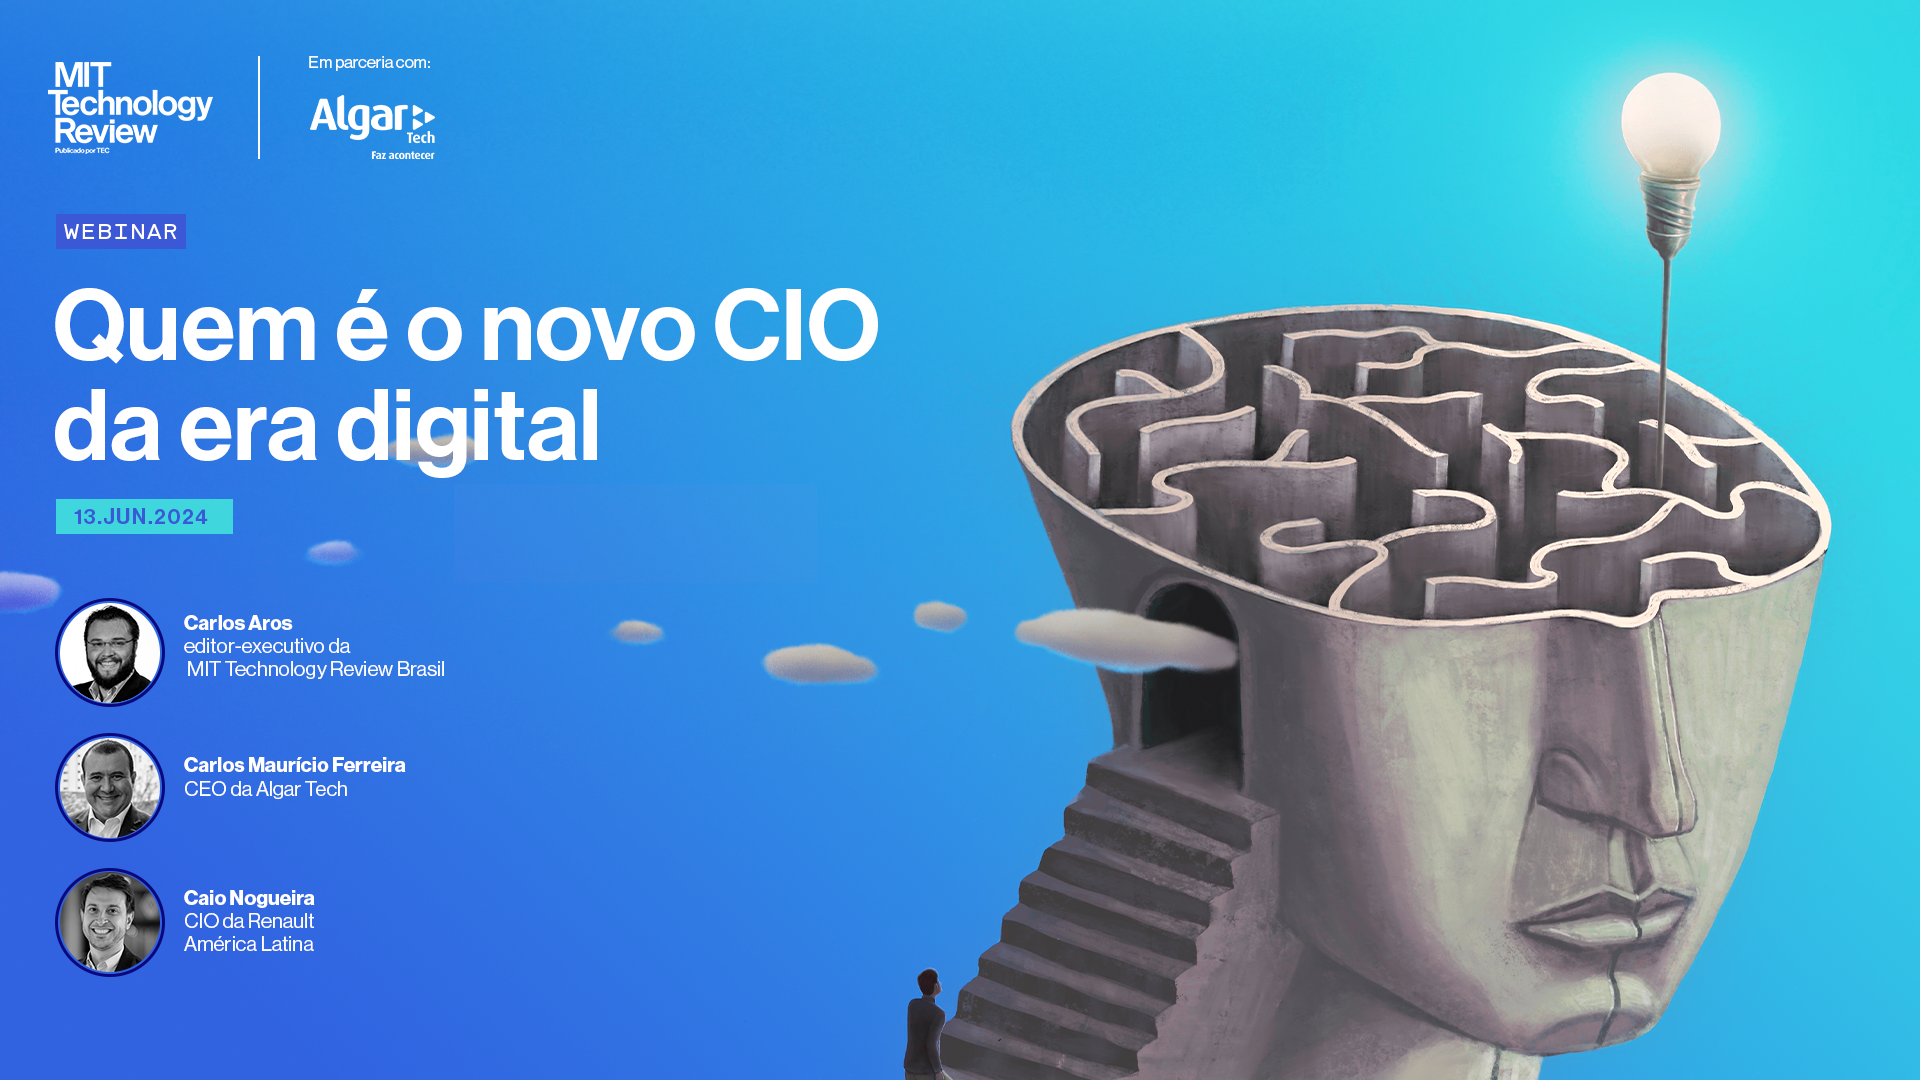 Banner do Webinar "Quem é o novo CIO da era digital"